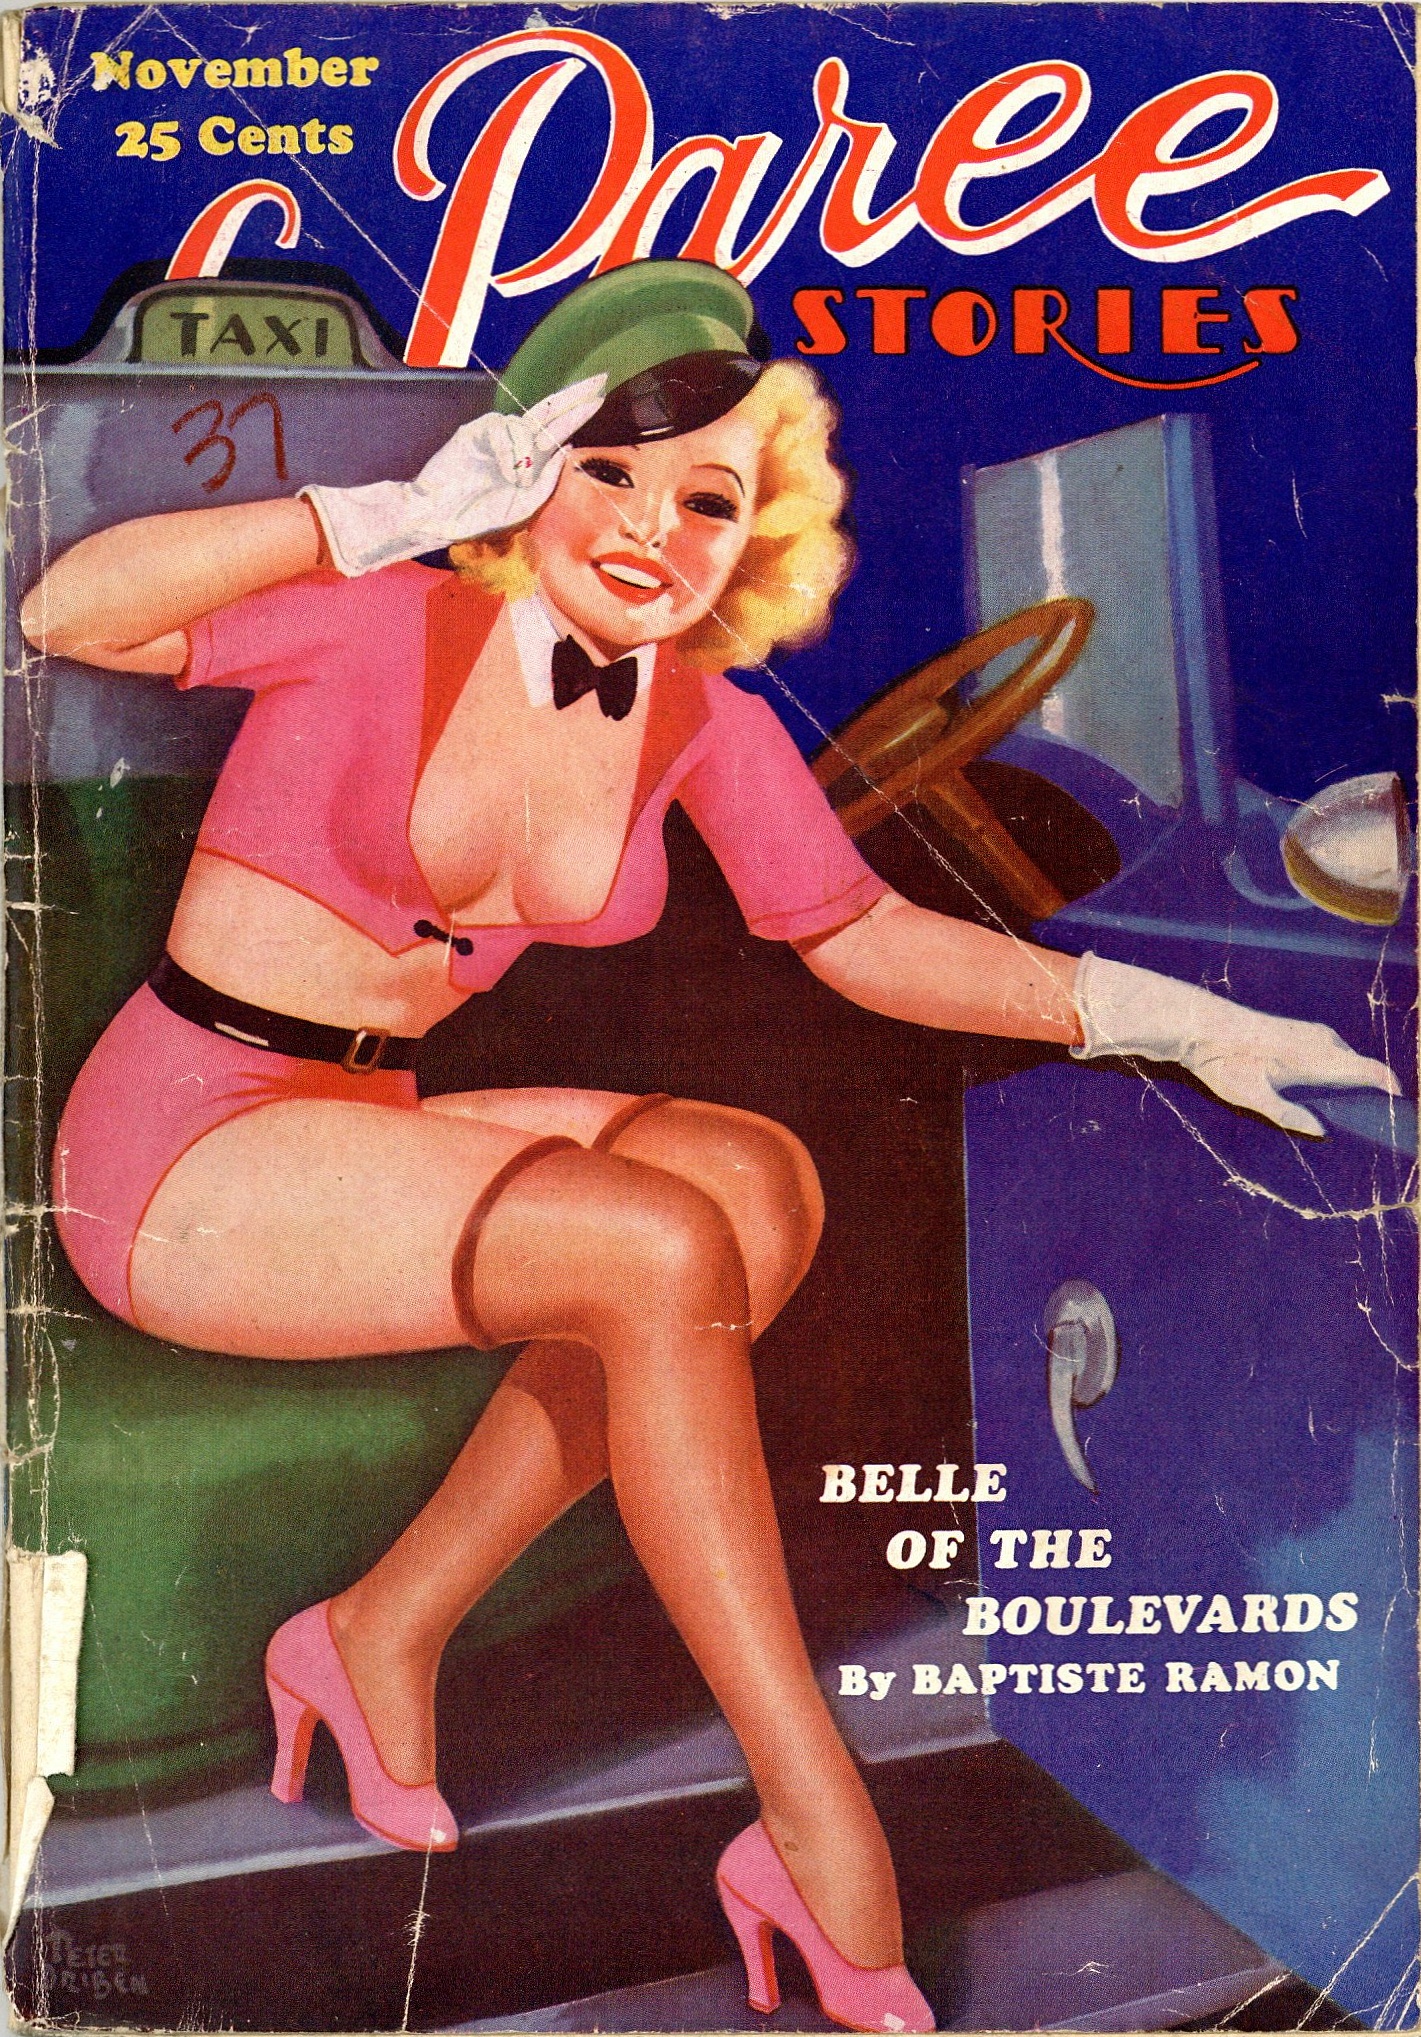 La Paree Stories November 1937